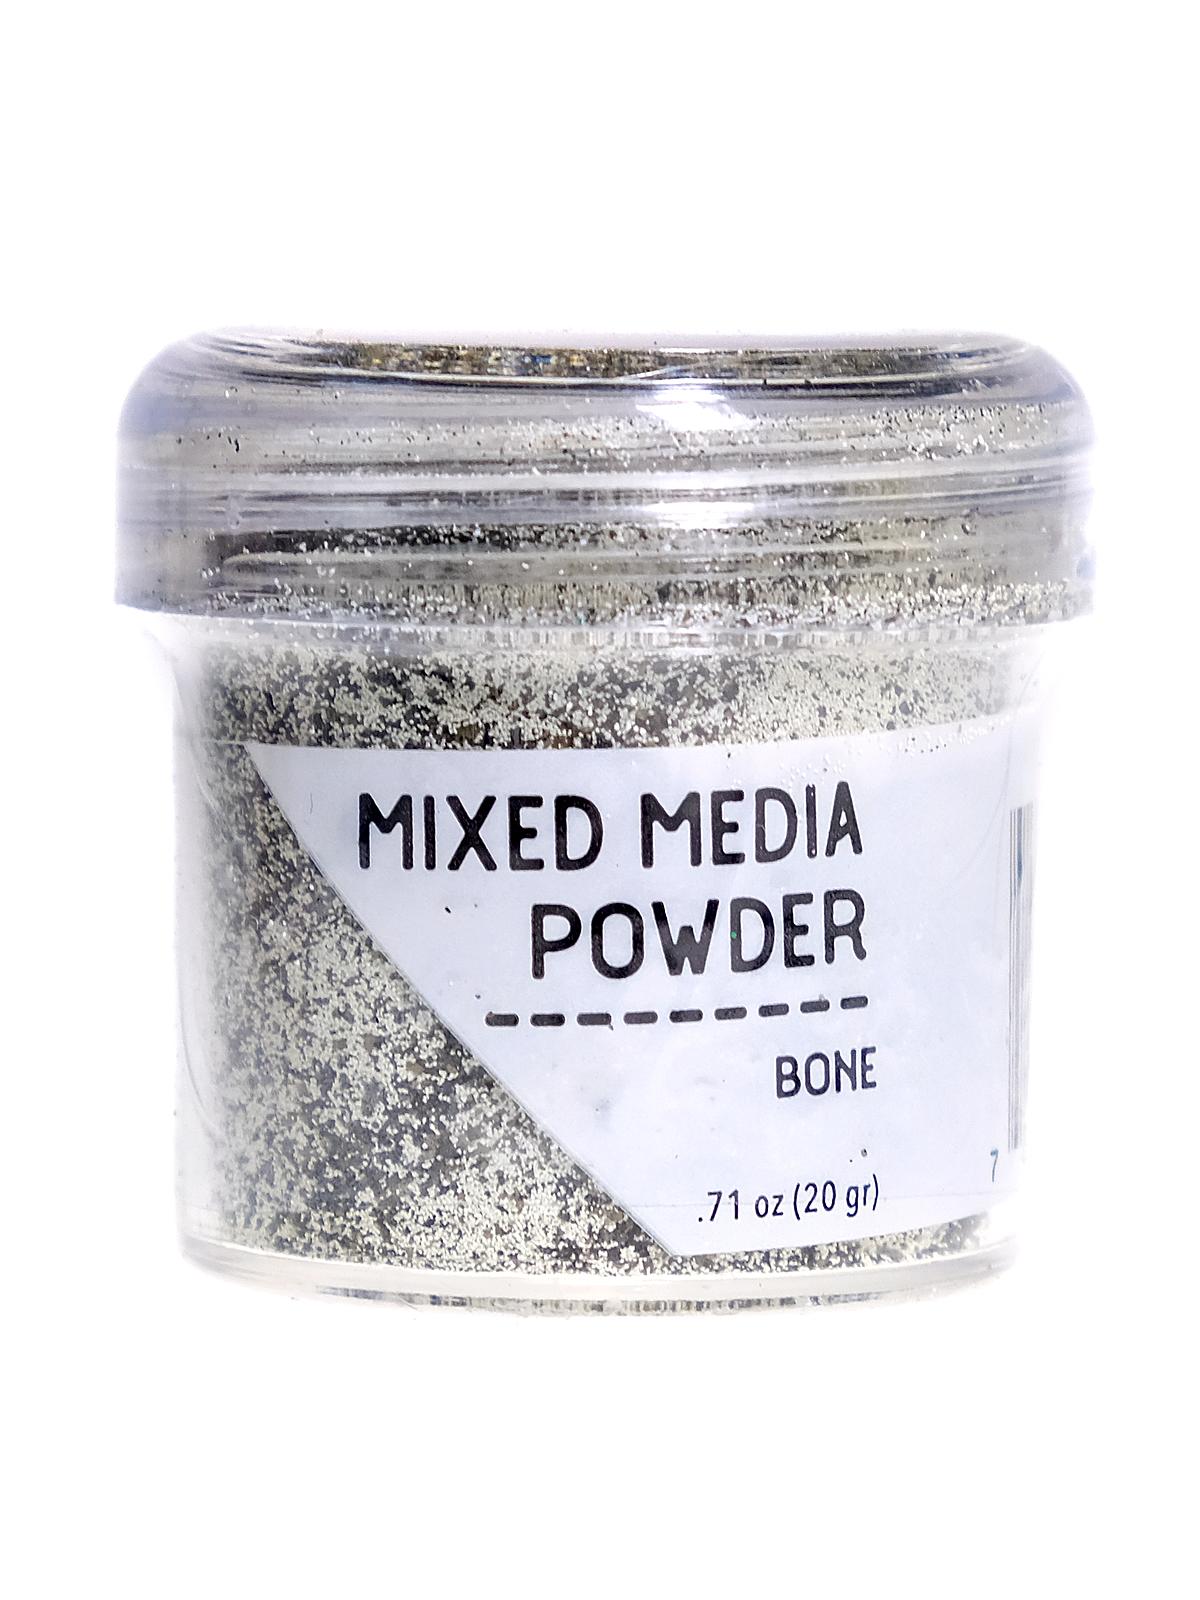 Mixed Media Powders Bone 20 G Jar